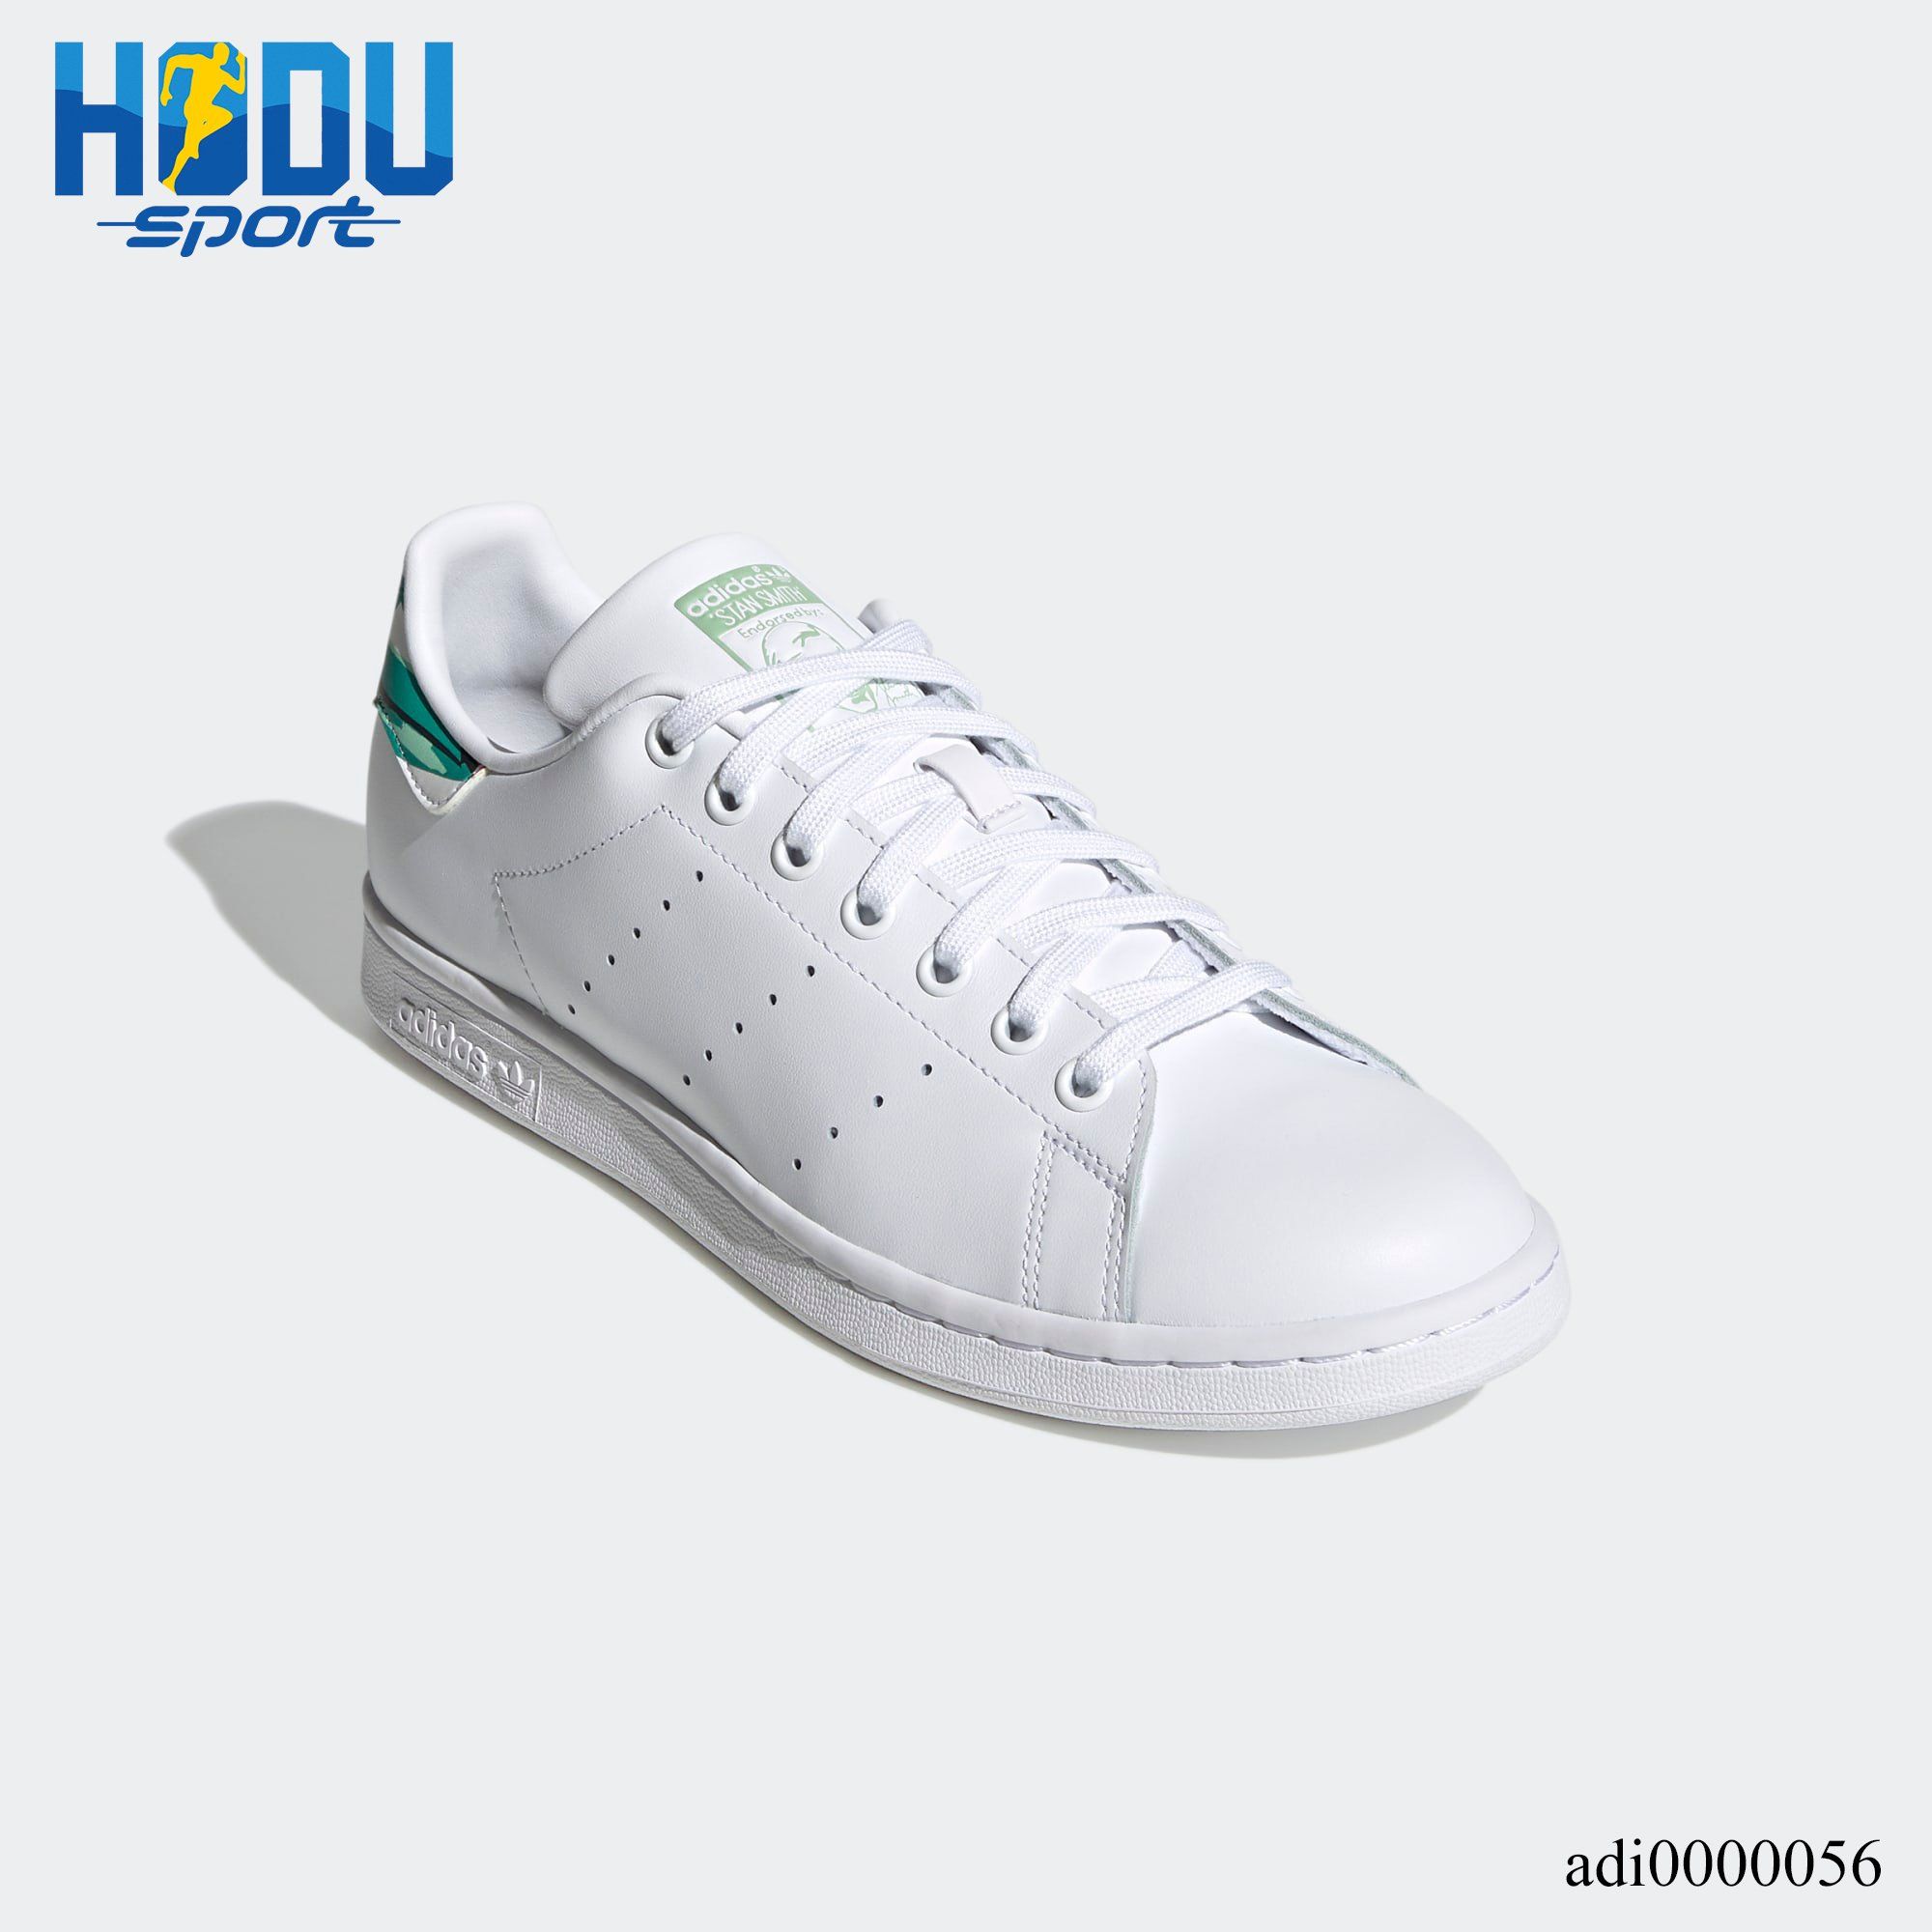 Phân phối giày thể thao Adidas chính hãng Stan Smith tại HODU SPORT – HODU  Sport - Thời trang thể thao chính hãng